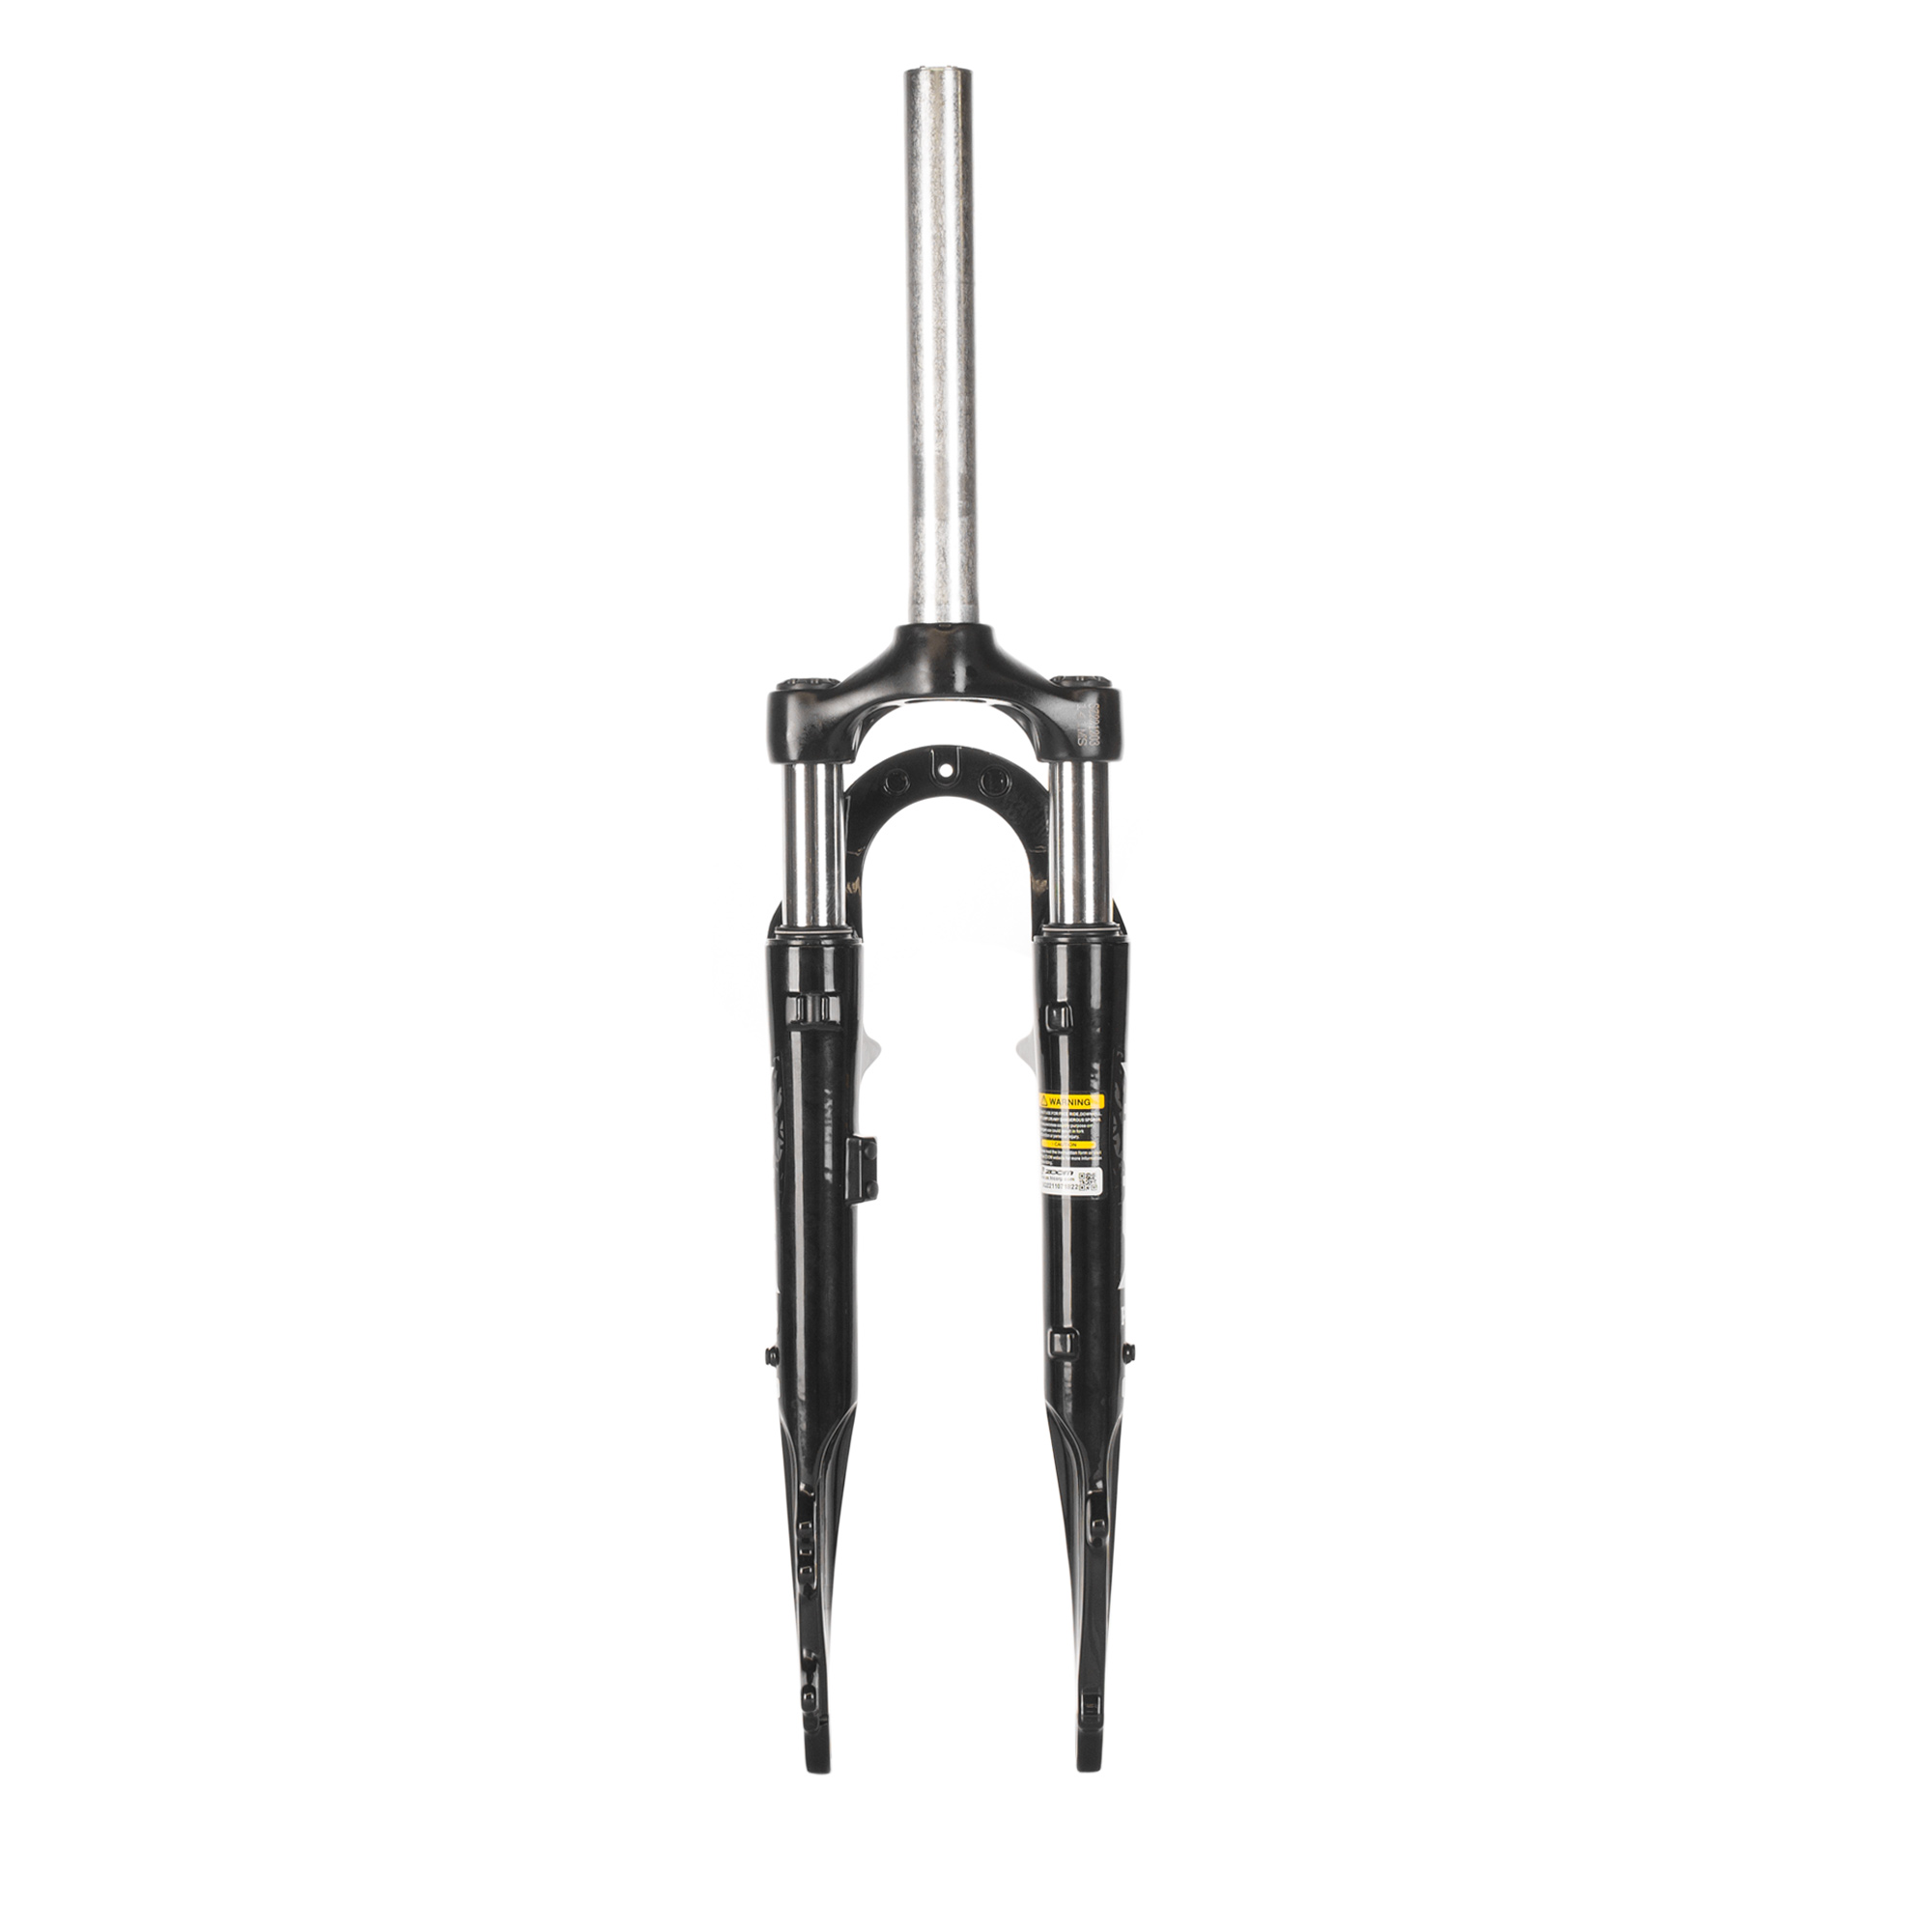 Ciclometa Detalles Tijera de bici alum negro suspension rec 45mm V-brake/freno disco IS 141 28.6x25.4x220